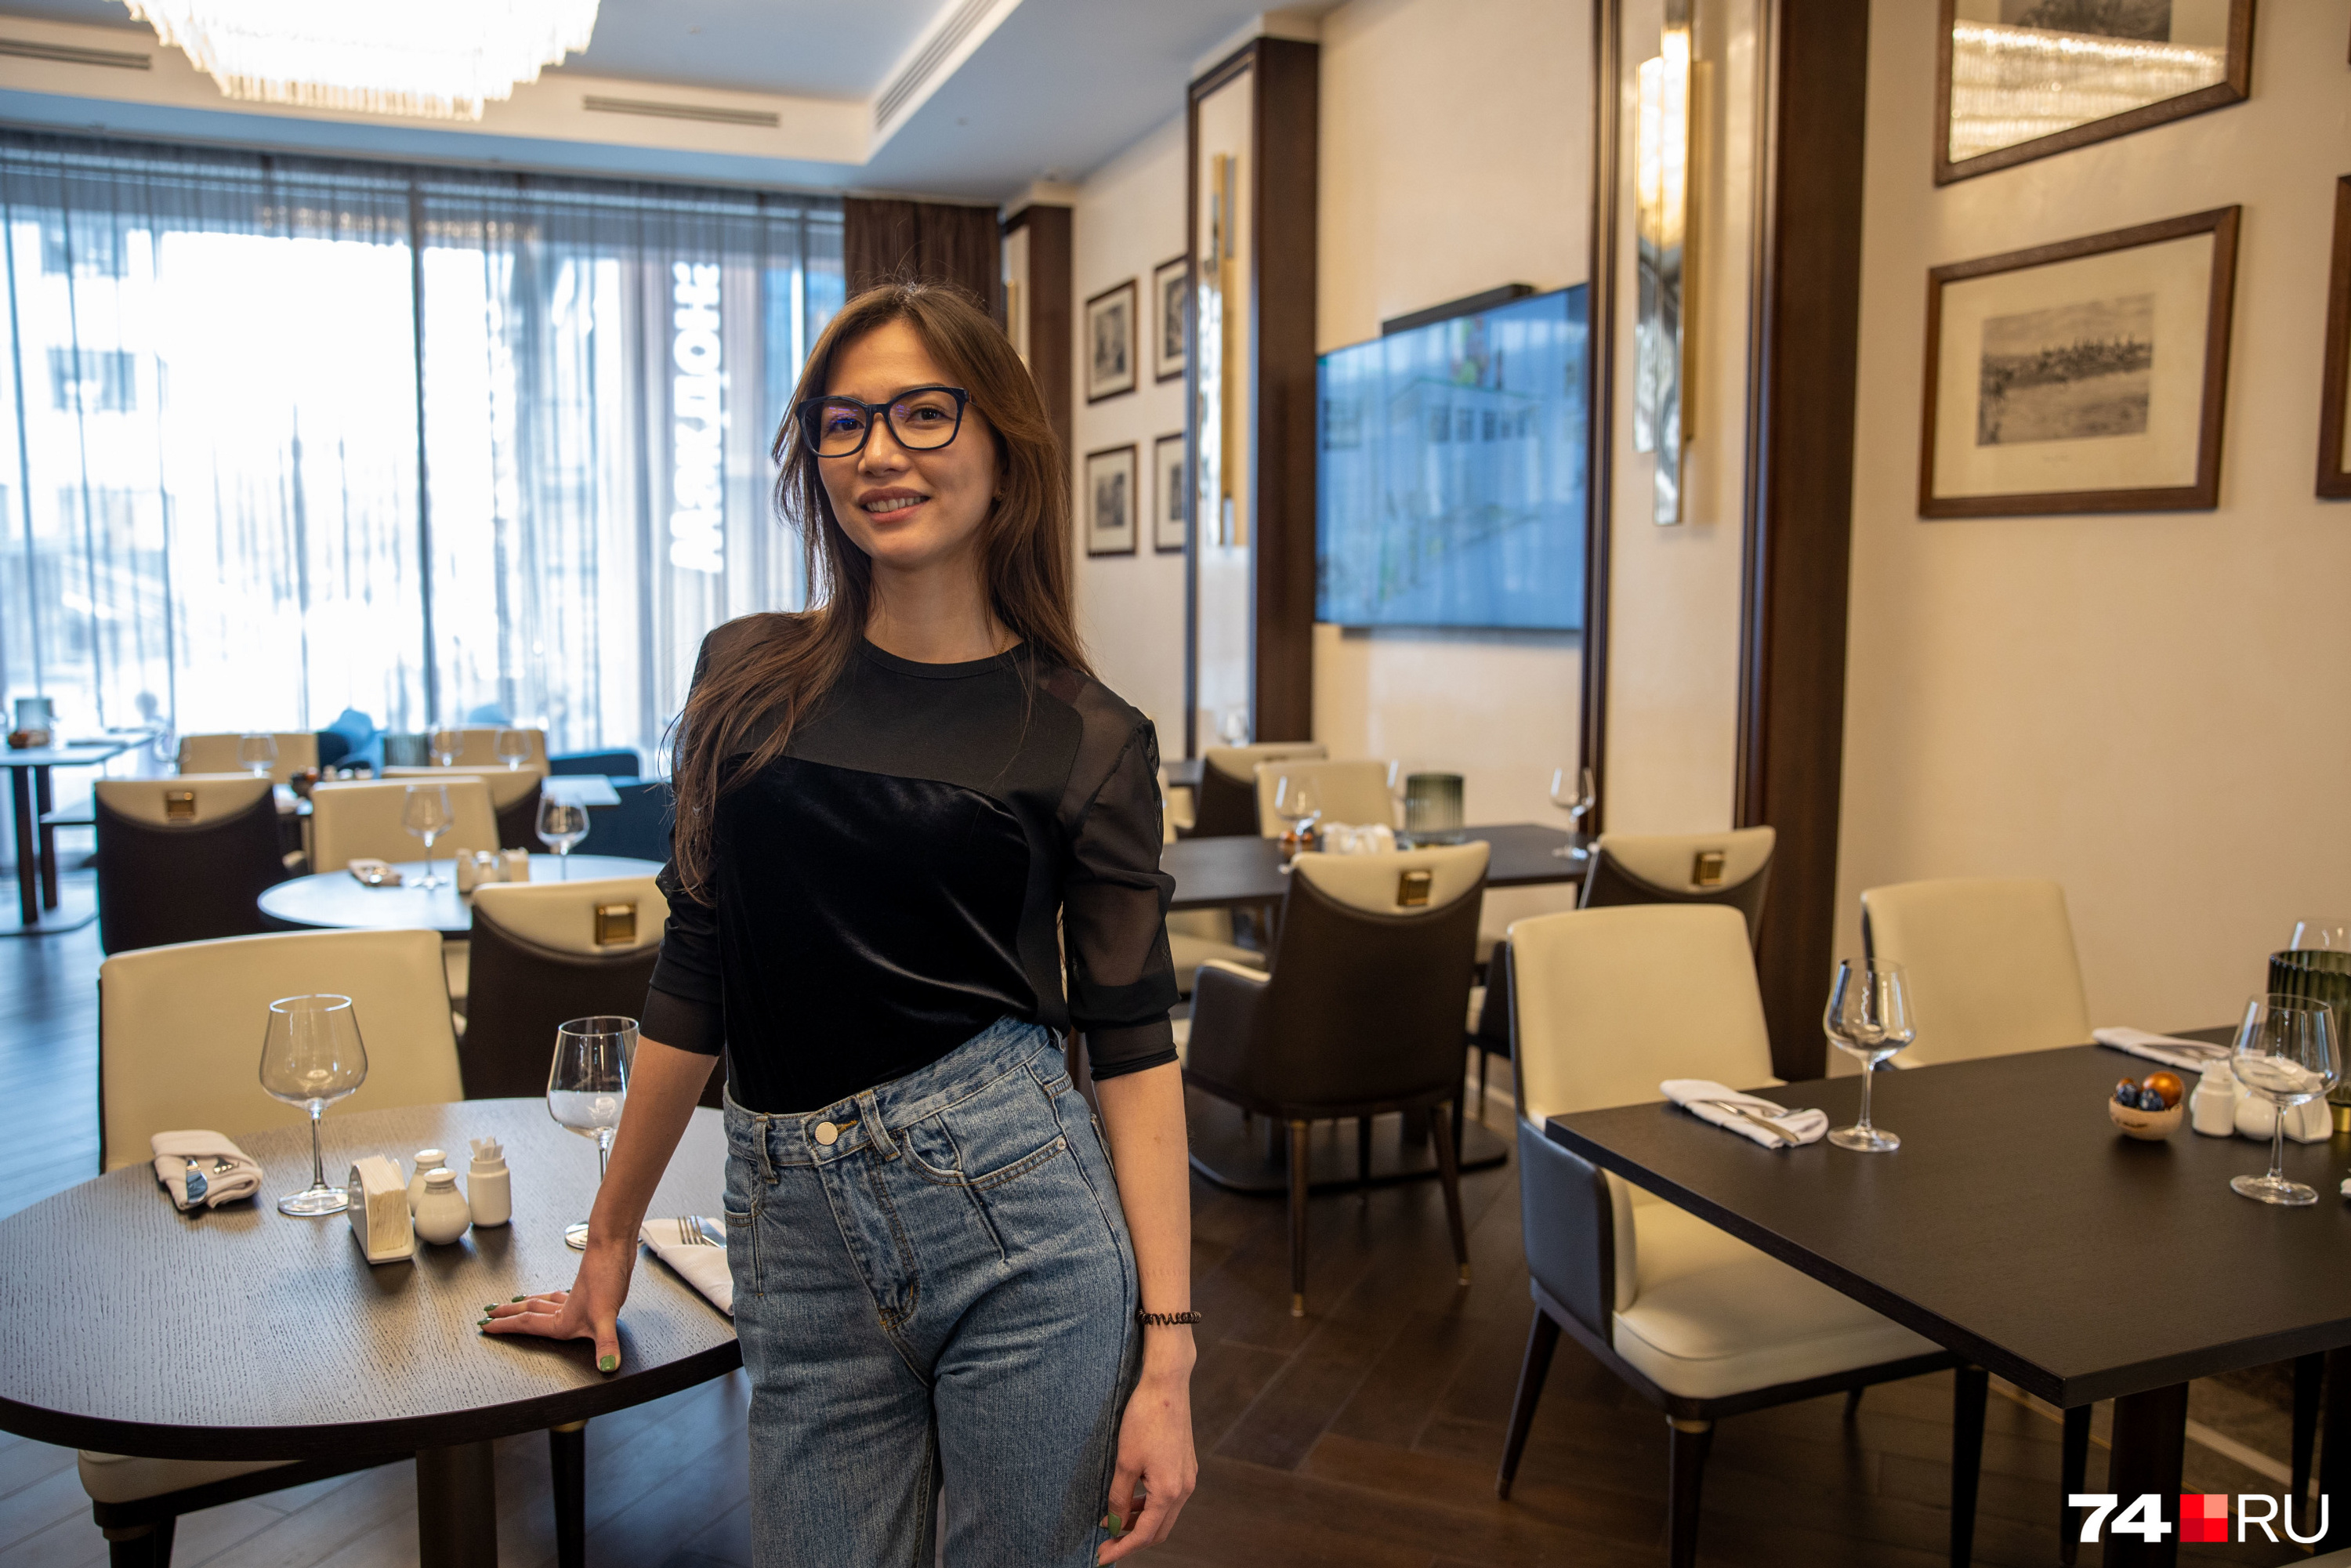 Управляющая рестораном Ева Вонг отмечает рост интереса к простой еде